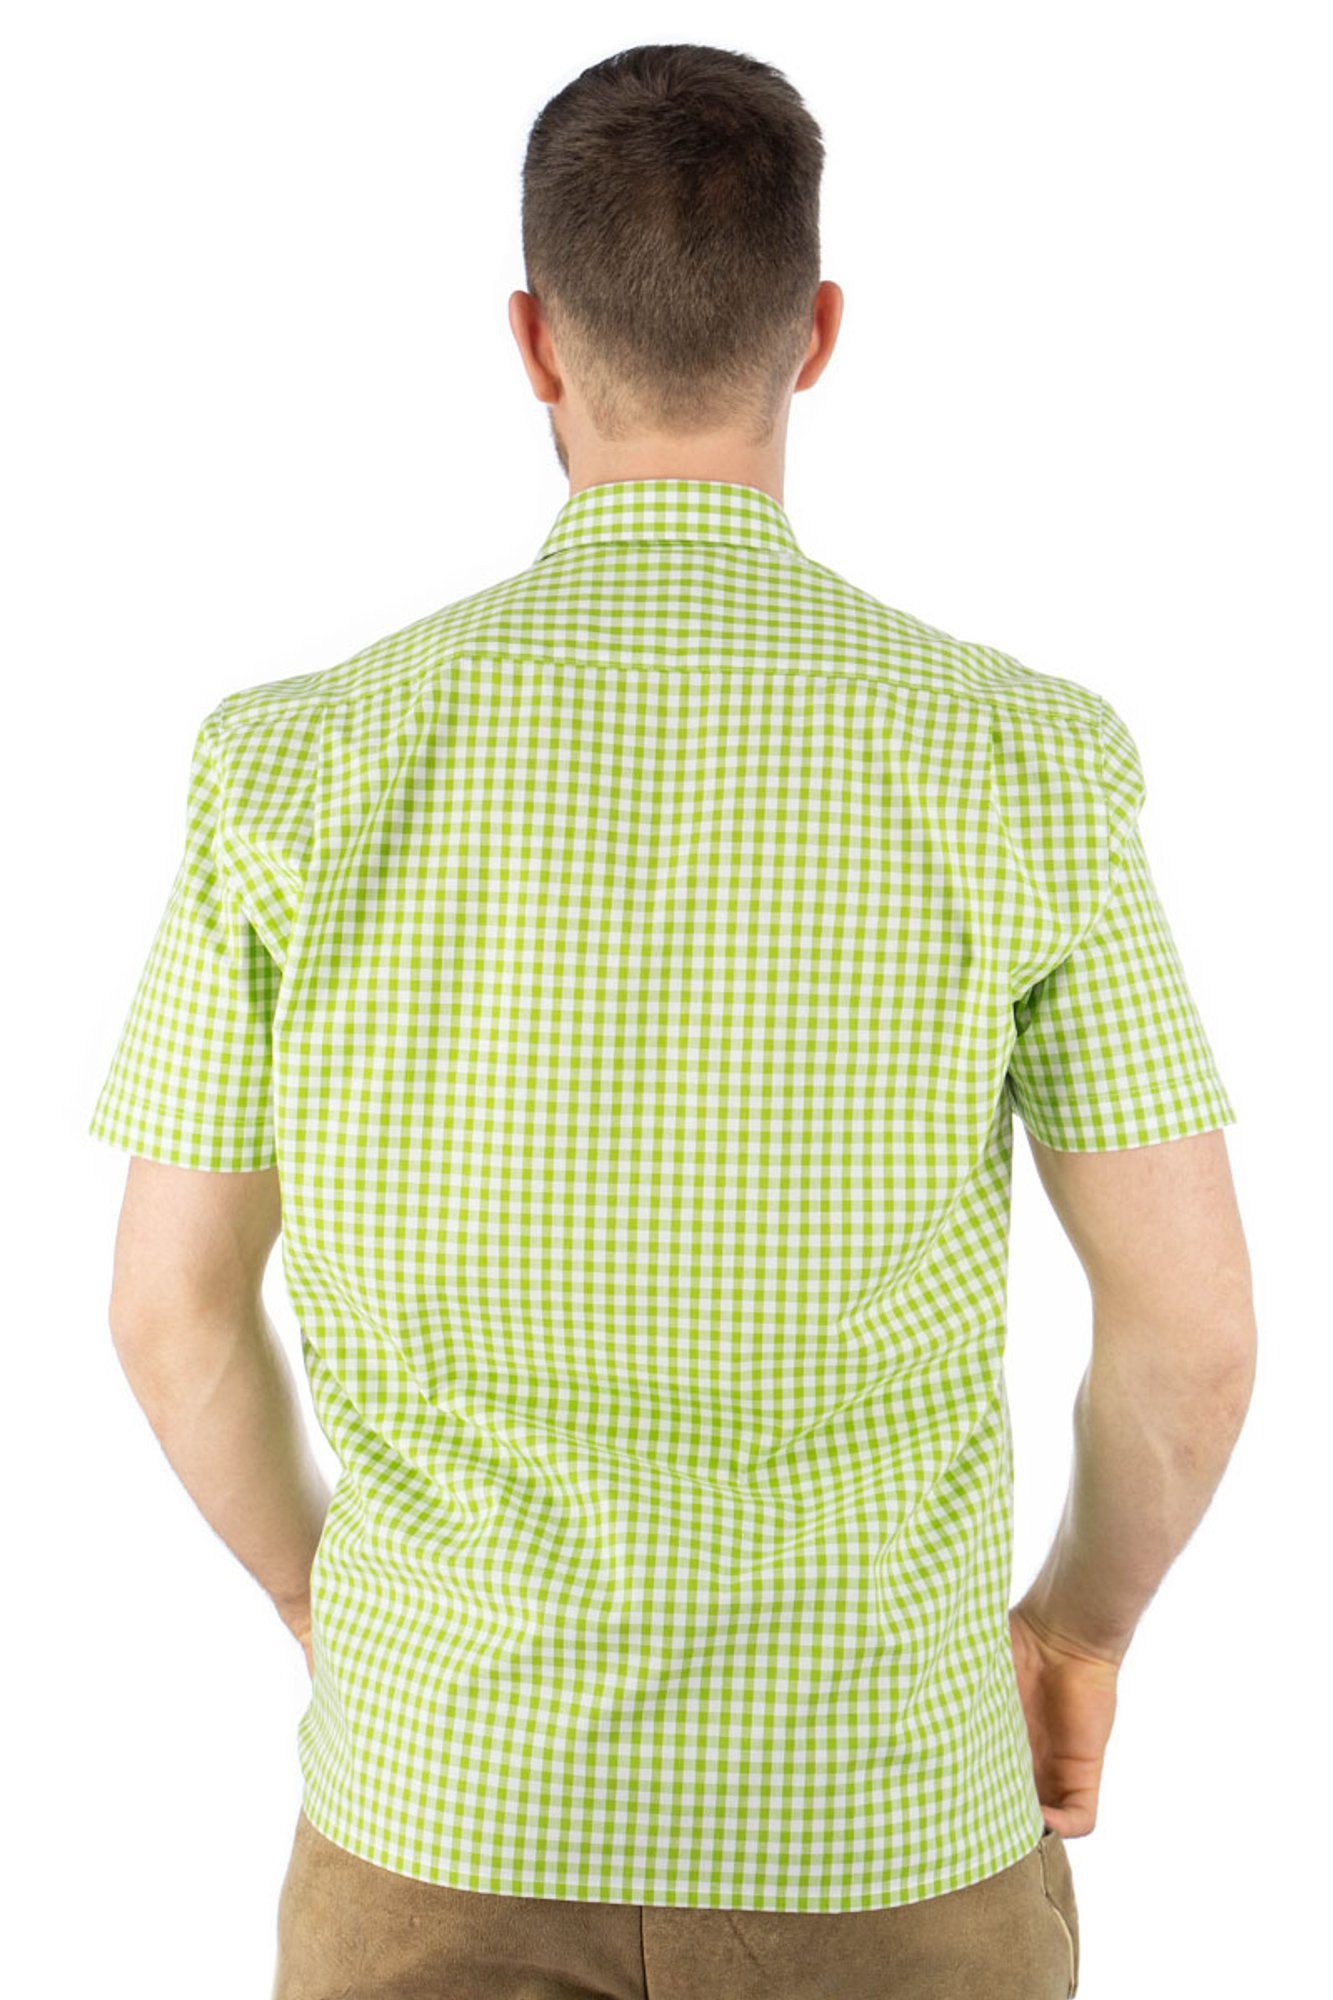 mit Zihul aufgesetzter Hirsch-Stickerei Kurzarmhemd Brusttasche Trachtenhemd OS-Trachten mit giftgrün